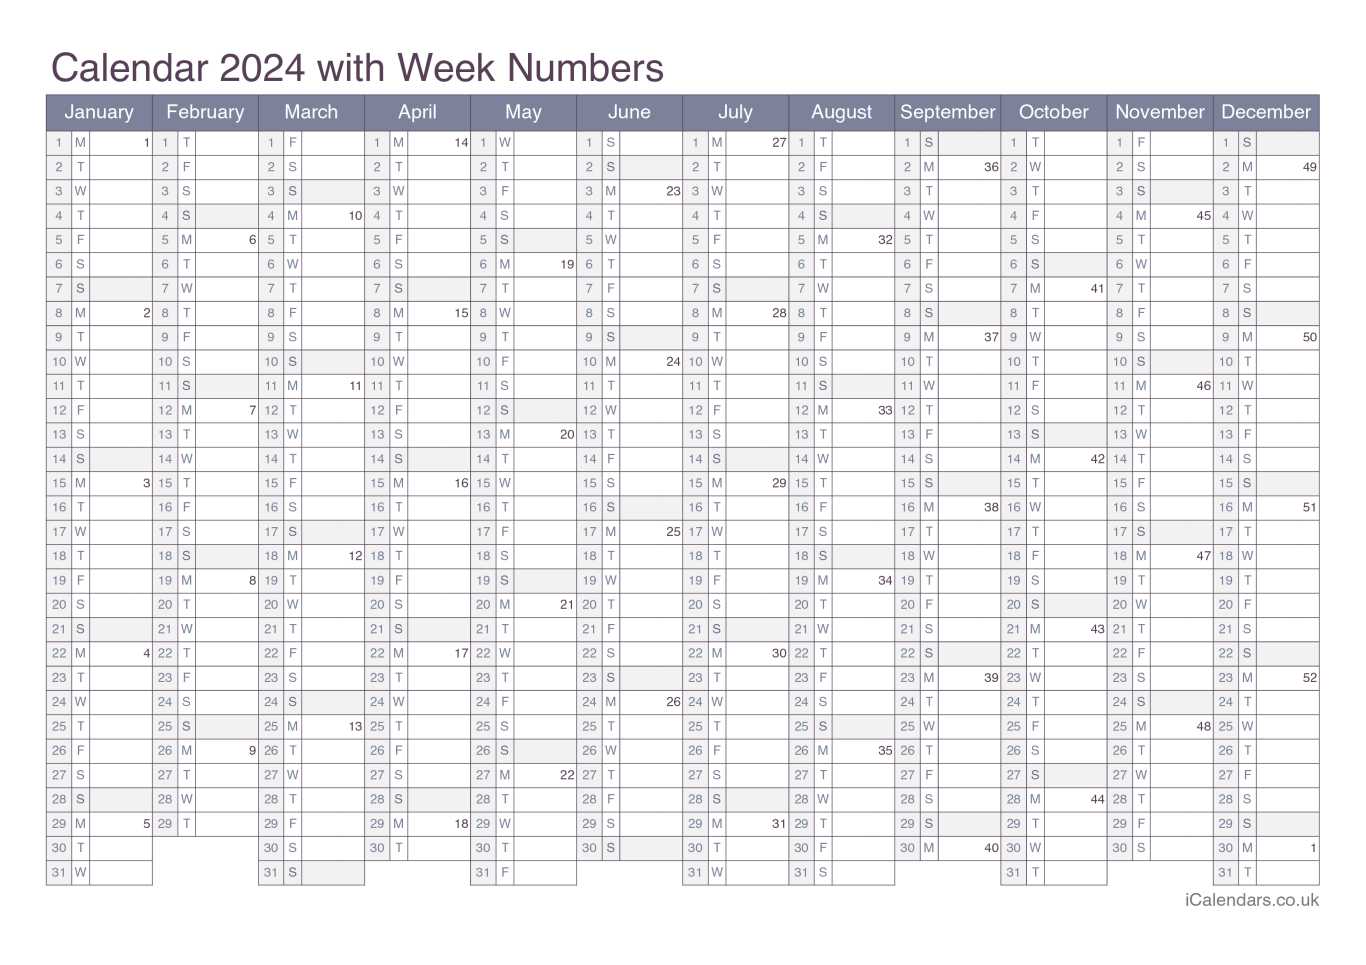 Calendar 2024 with week numbers - Office